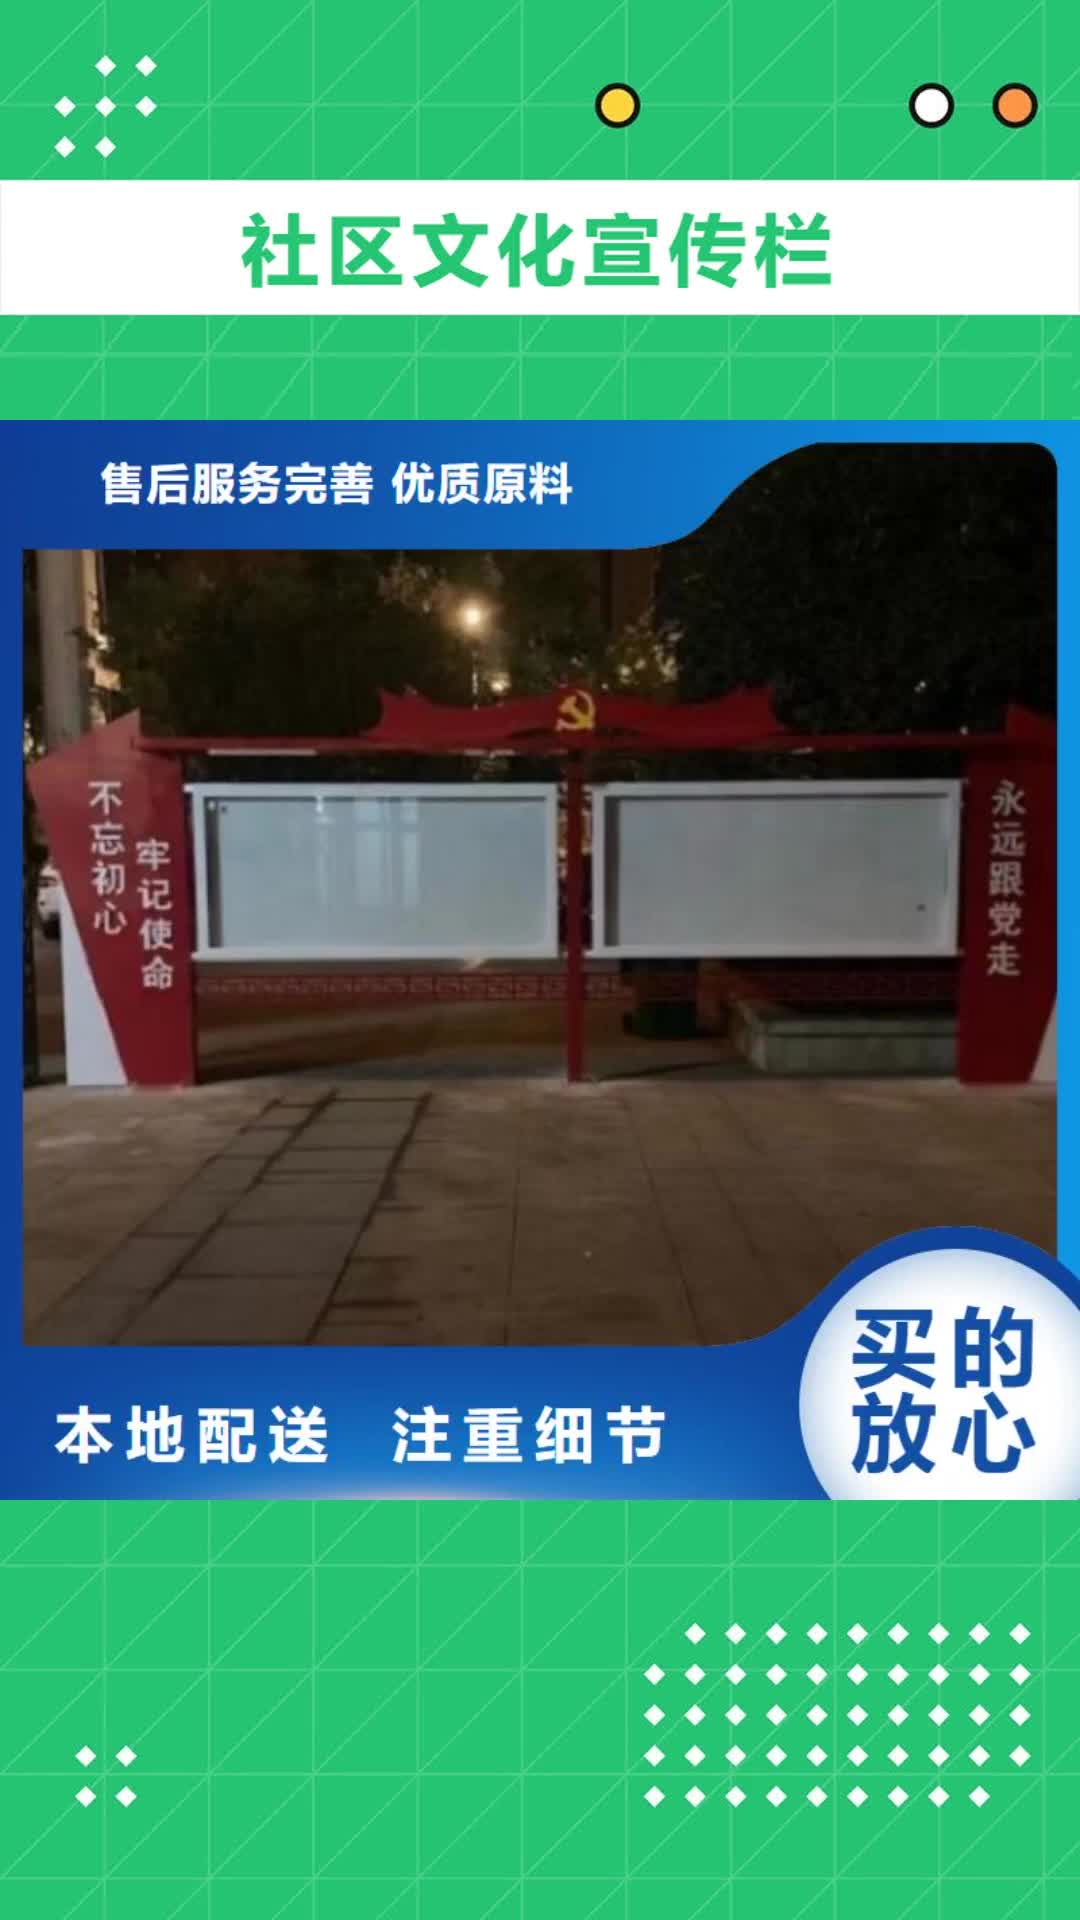 武汉【社区文化宣传栏】,广告滚动灯箱生产厂家今日新品